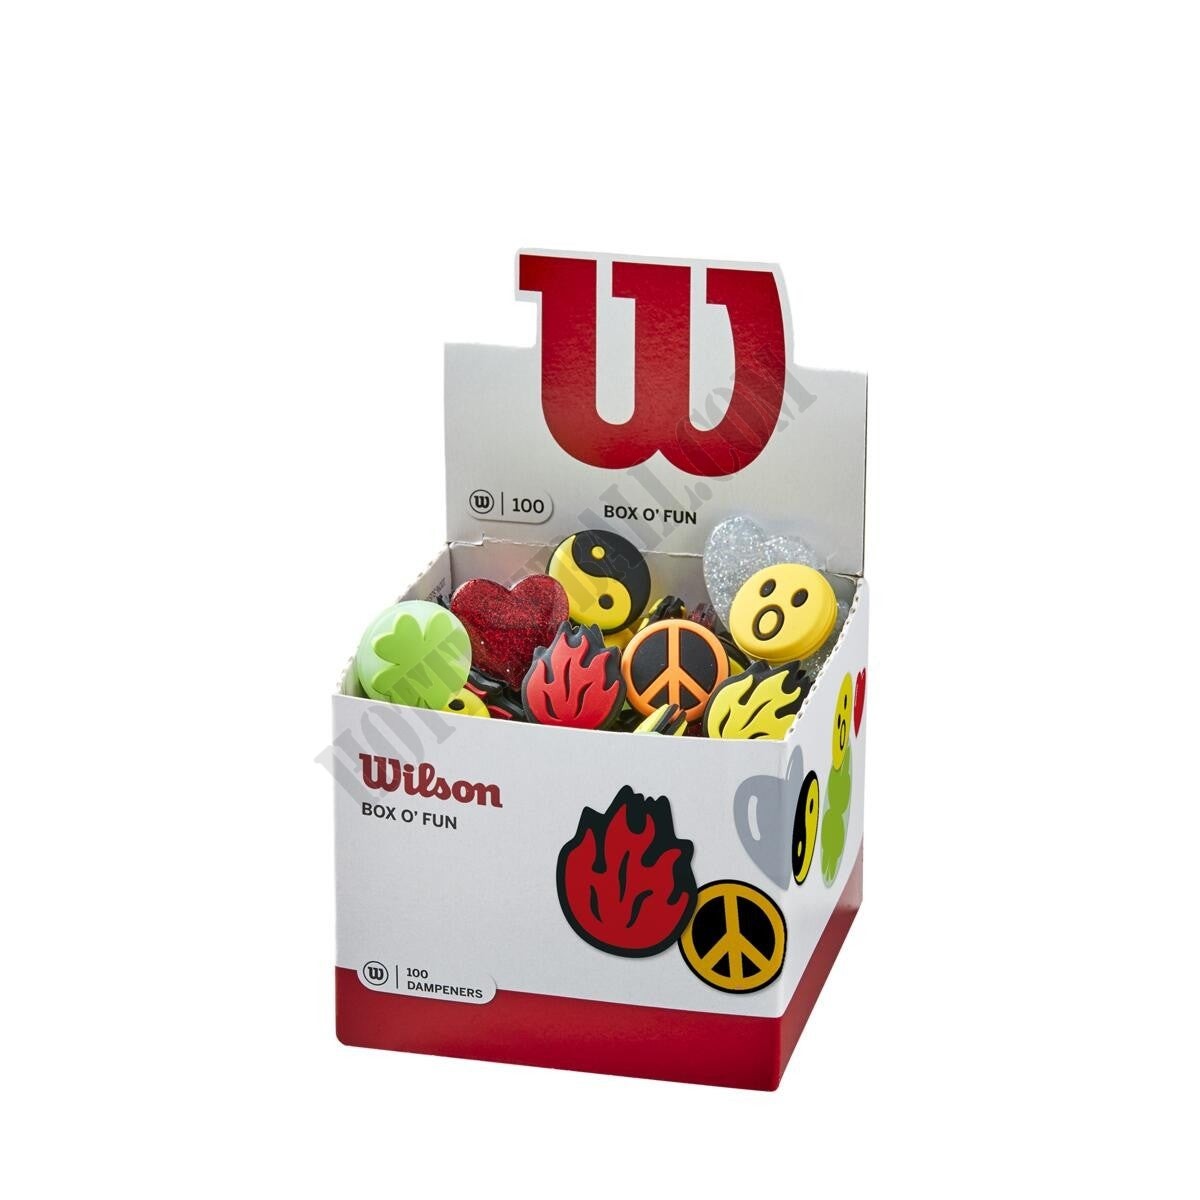 Box O' Fun Dampeners 100 Pack - Wilson Discount Store - -0